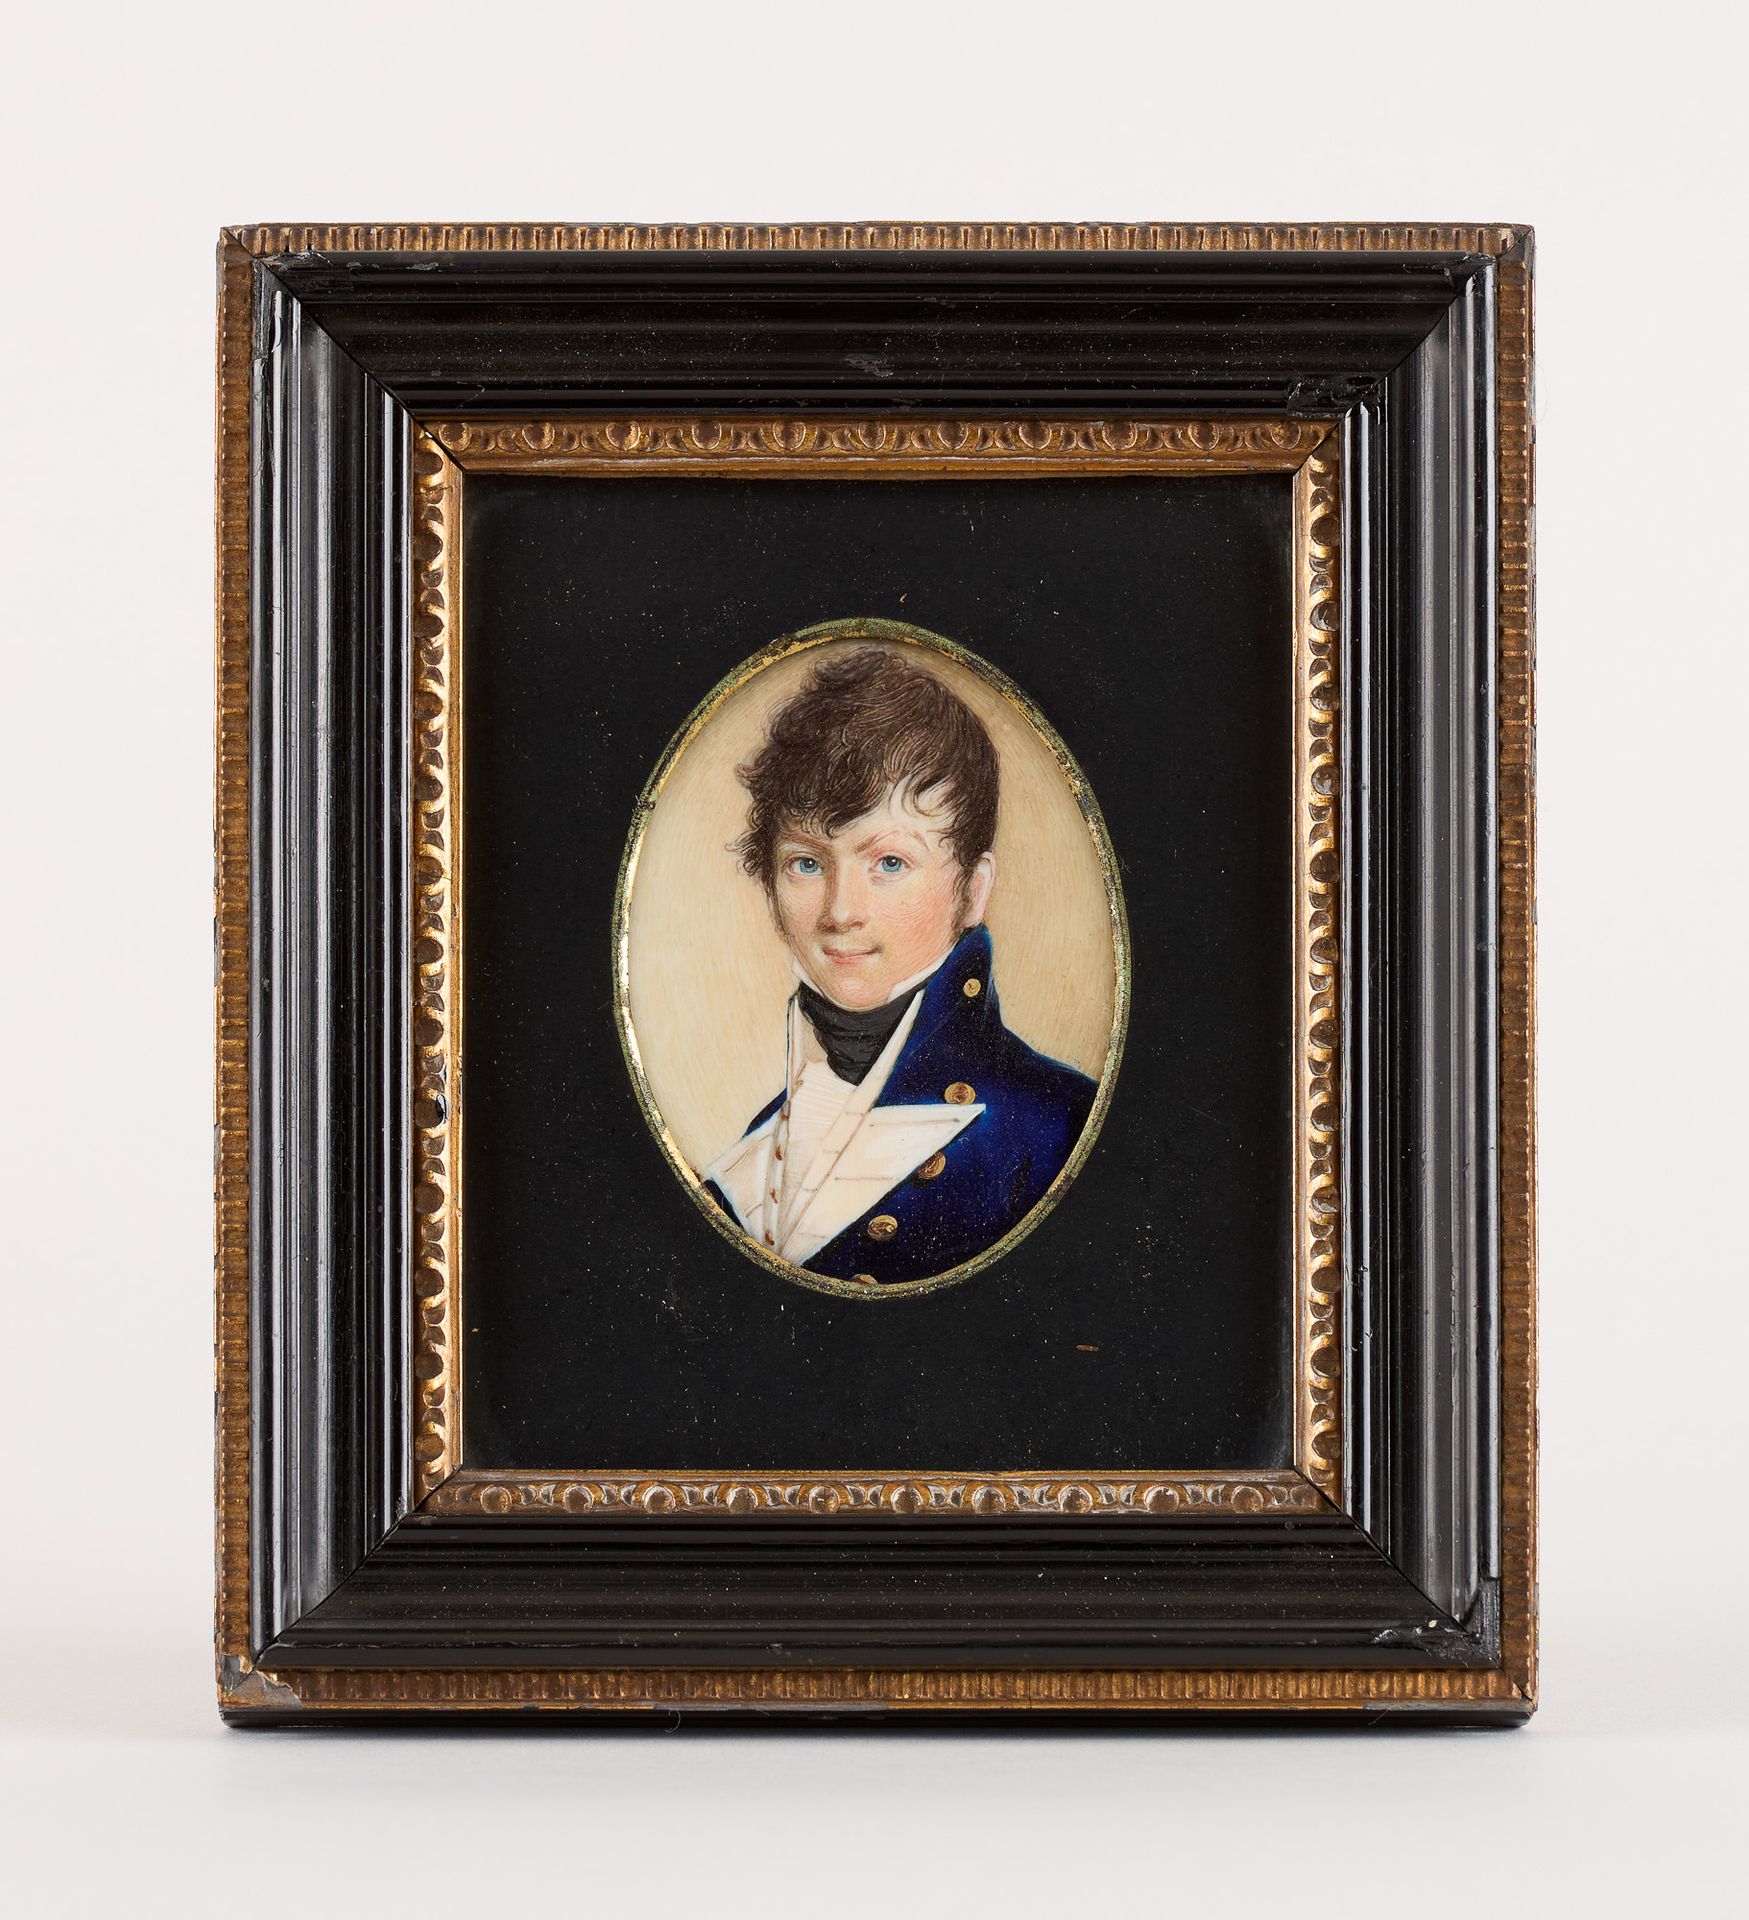 Travail du 19e. Miniatura sobre marfil: presunto retrato del almirante Farber.

&hellip;